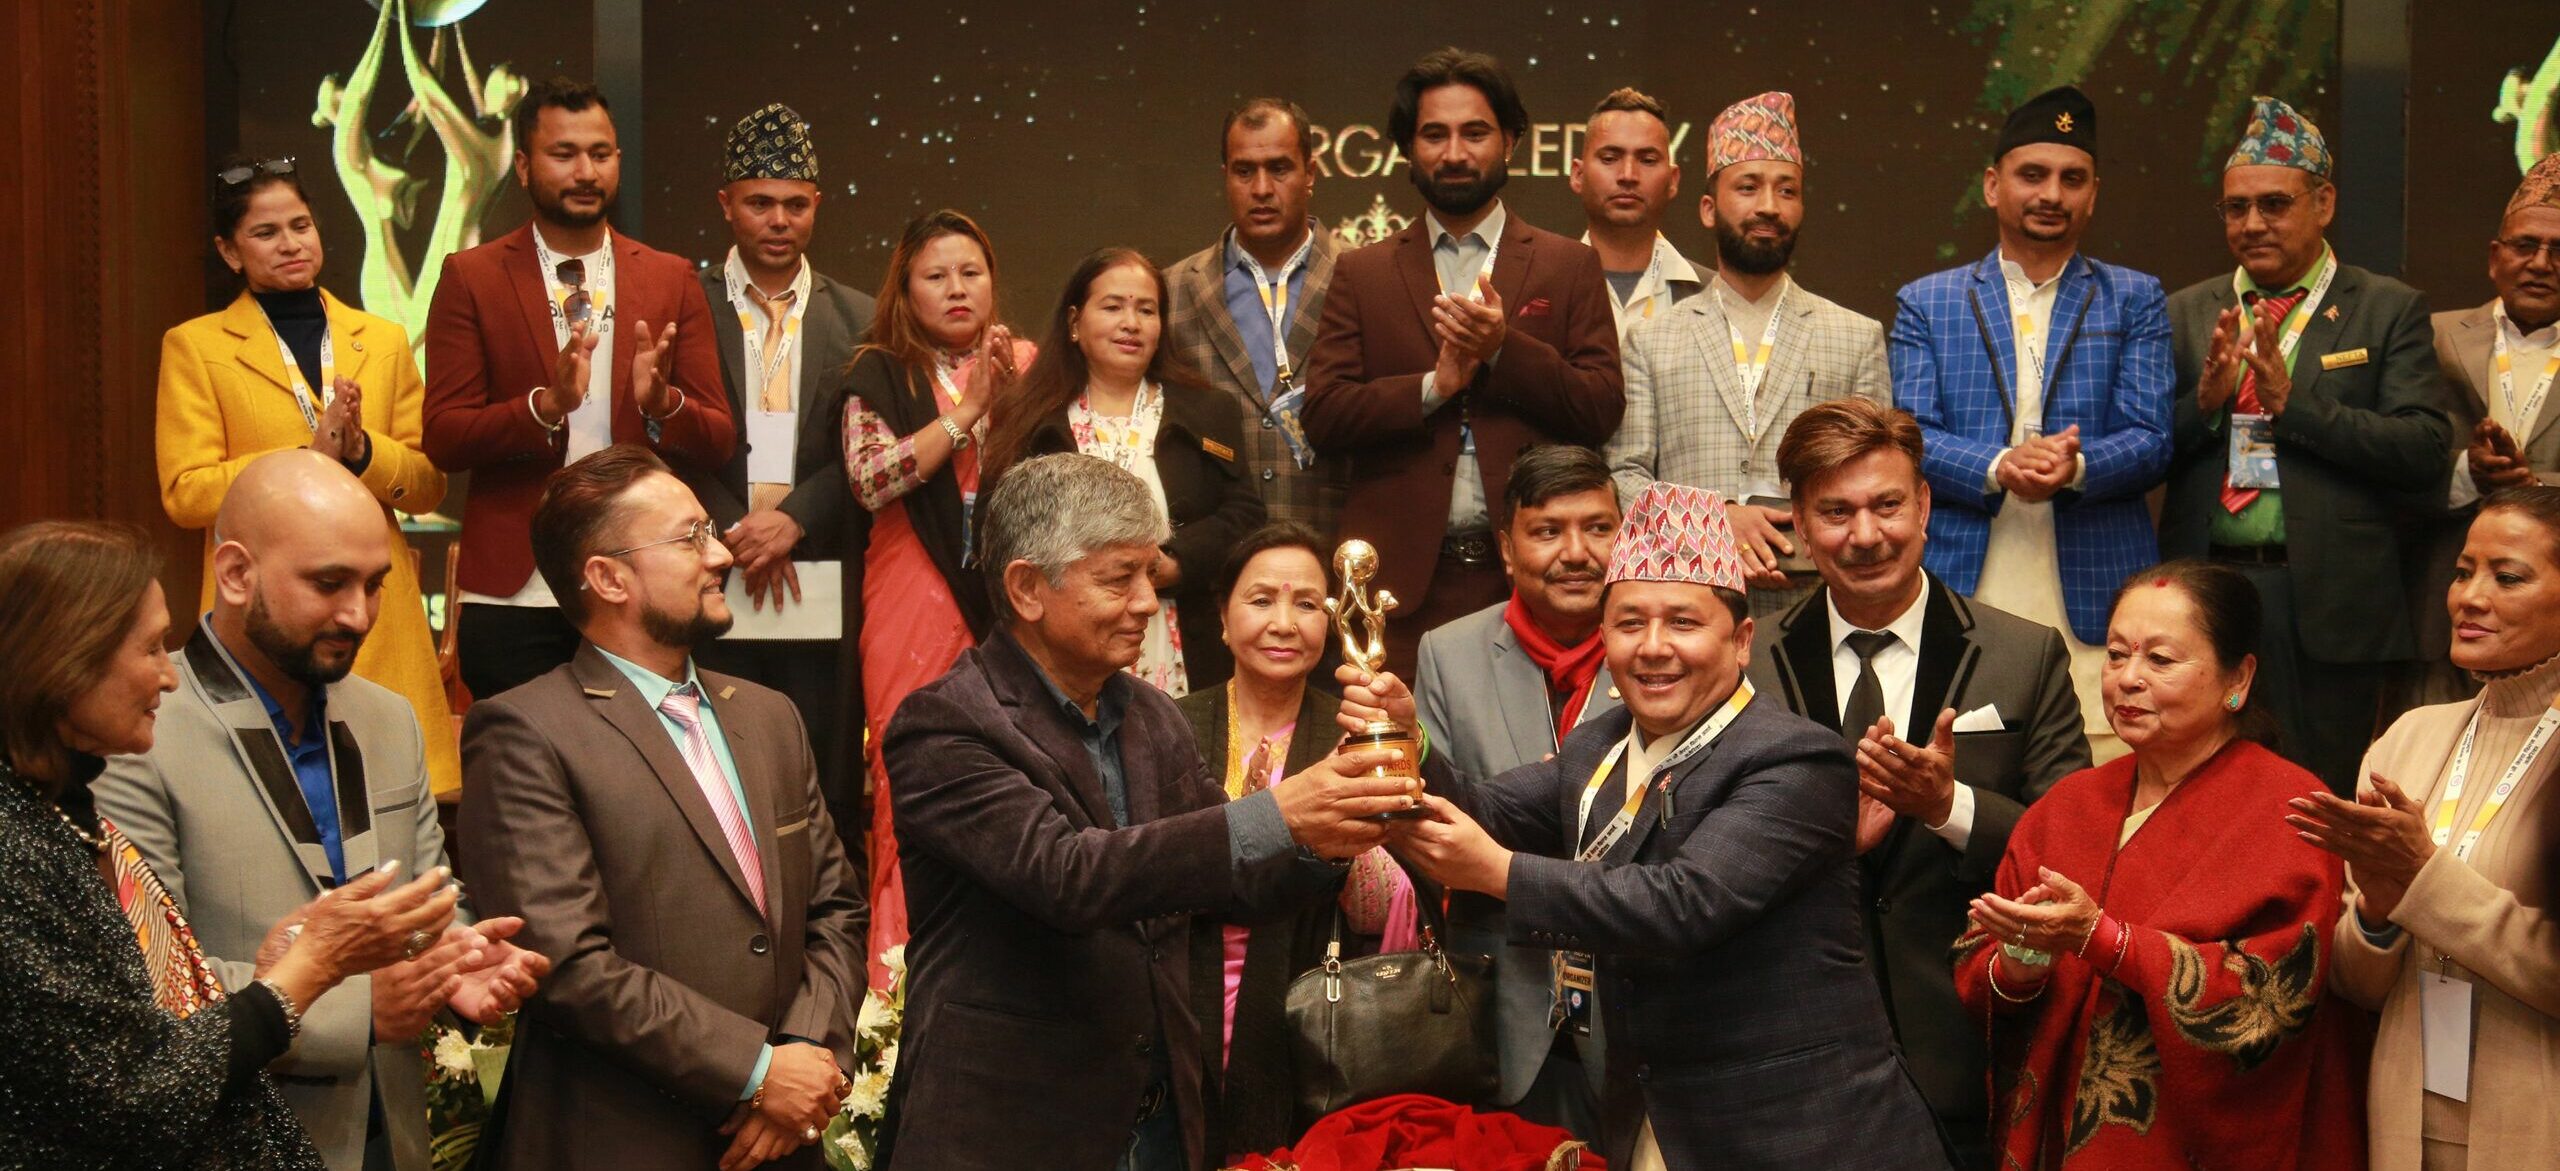 नेपाली चलचित्रको अन्तर्राष्ट्रिय बजार बढाउन अमेरिकामा नेफ्टा अवार्ड : अध्यक्ष लामा